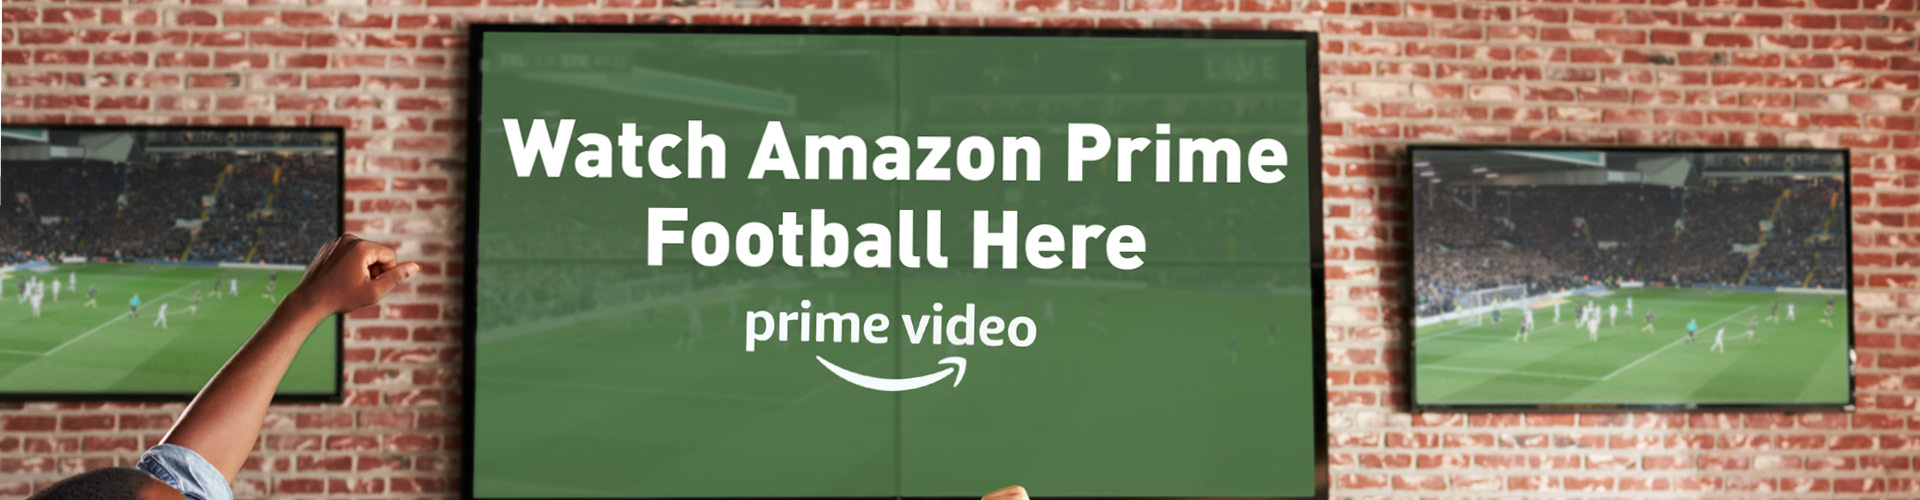 Premier League live on Amazon prime at local pub